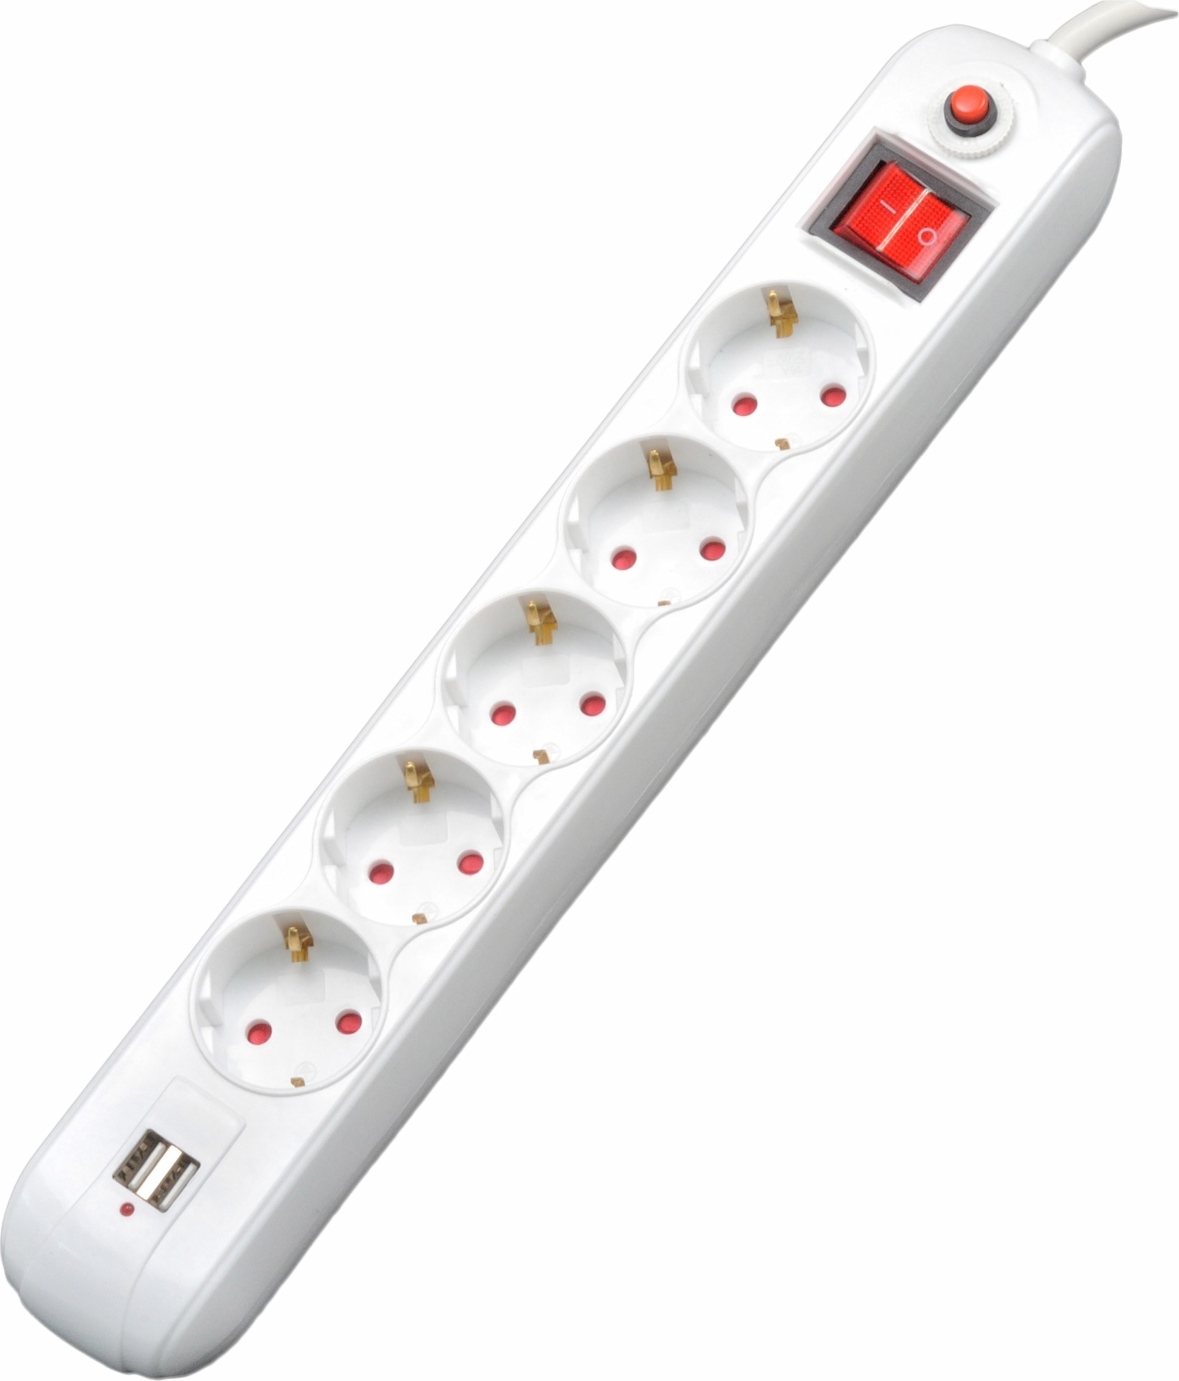 PRELUNGITOR SPACER, Schuko x 5, conectare prin Schuko (T), USB x 2, cablu 4.5 m, 16 A, max. 3500W, protectie supratensiune, alb, "PP-5-45 USB" thumb